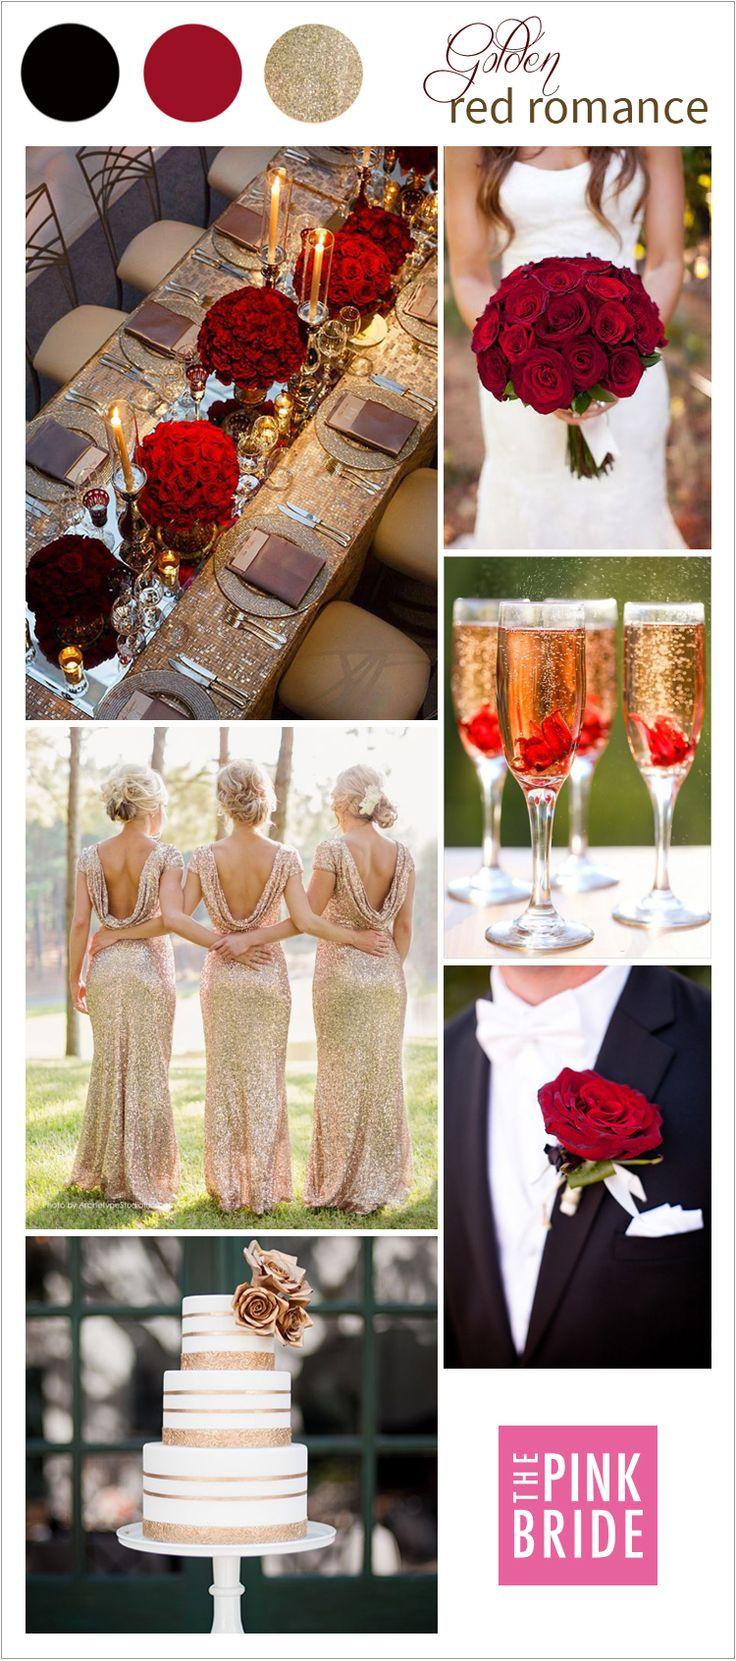 Hochzeit - Wedding Color Board: Golden Red Romance